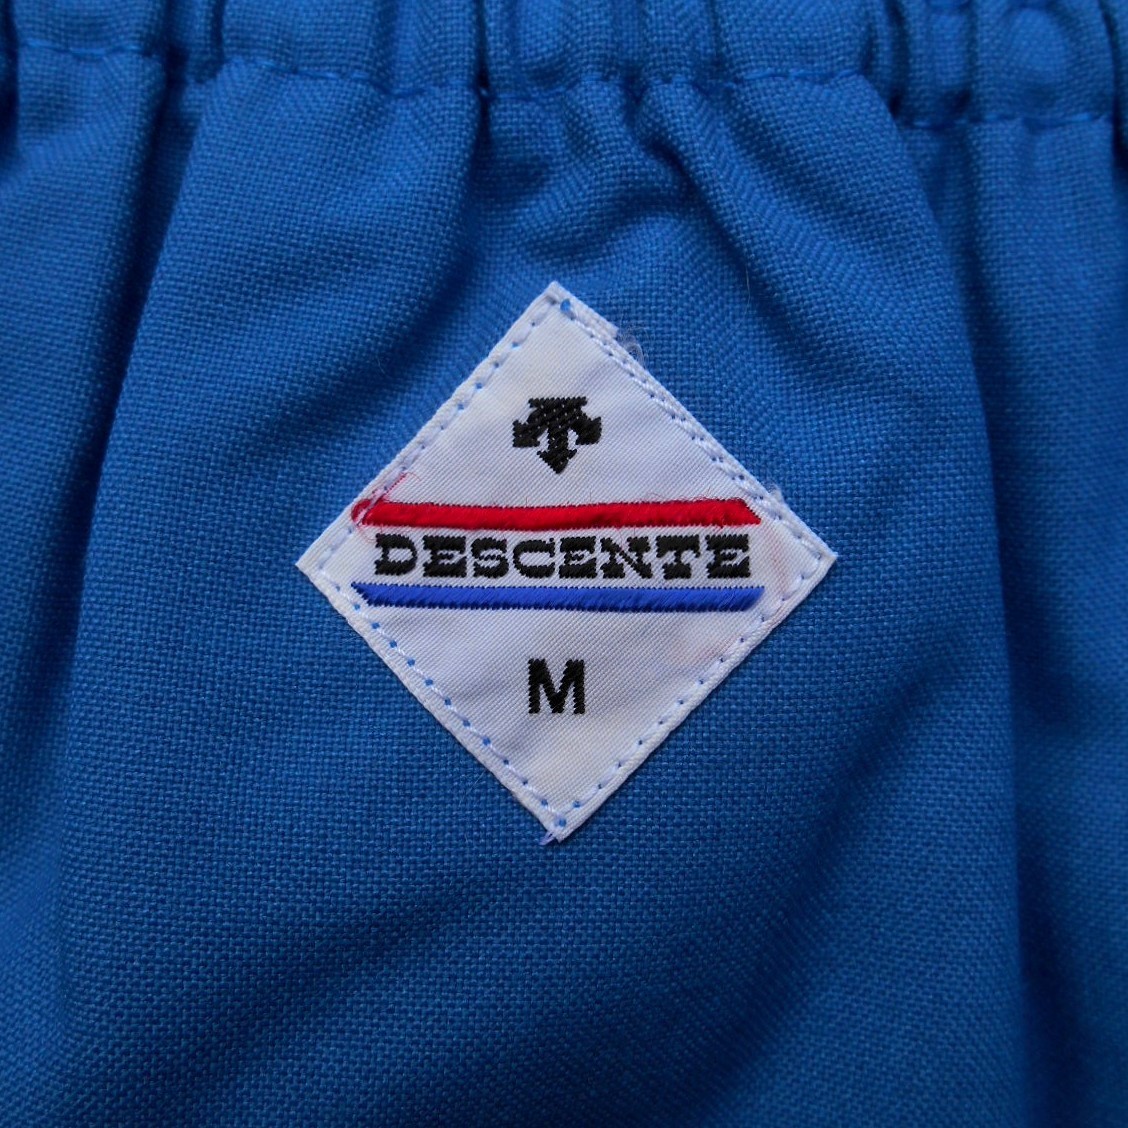 未使用 '80s DESCENTE デサント DP-65 ブルー M 青 ショートパンツ ランニング ゲームパンツ 当時物 デッドストック 昭和 ランパン 短パン_画像7